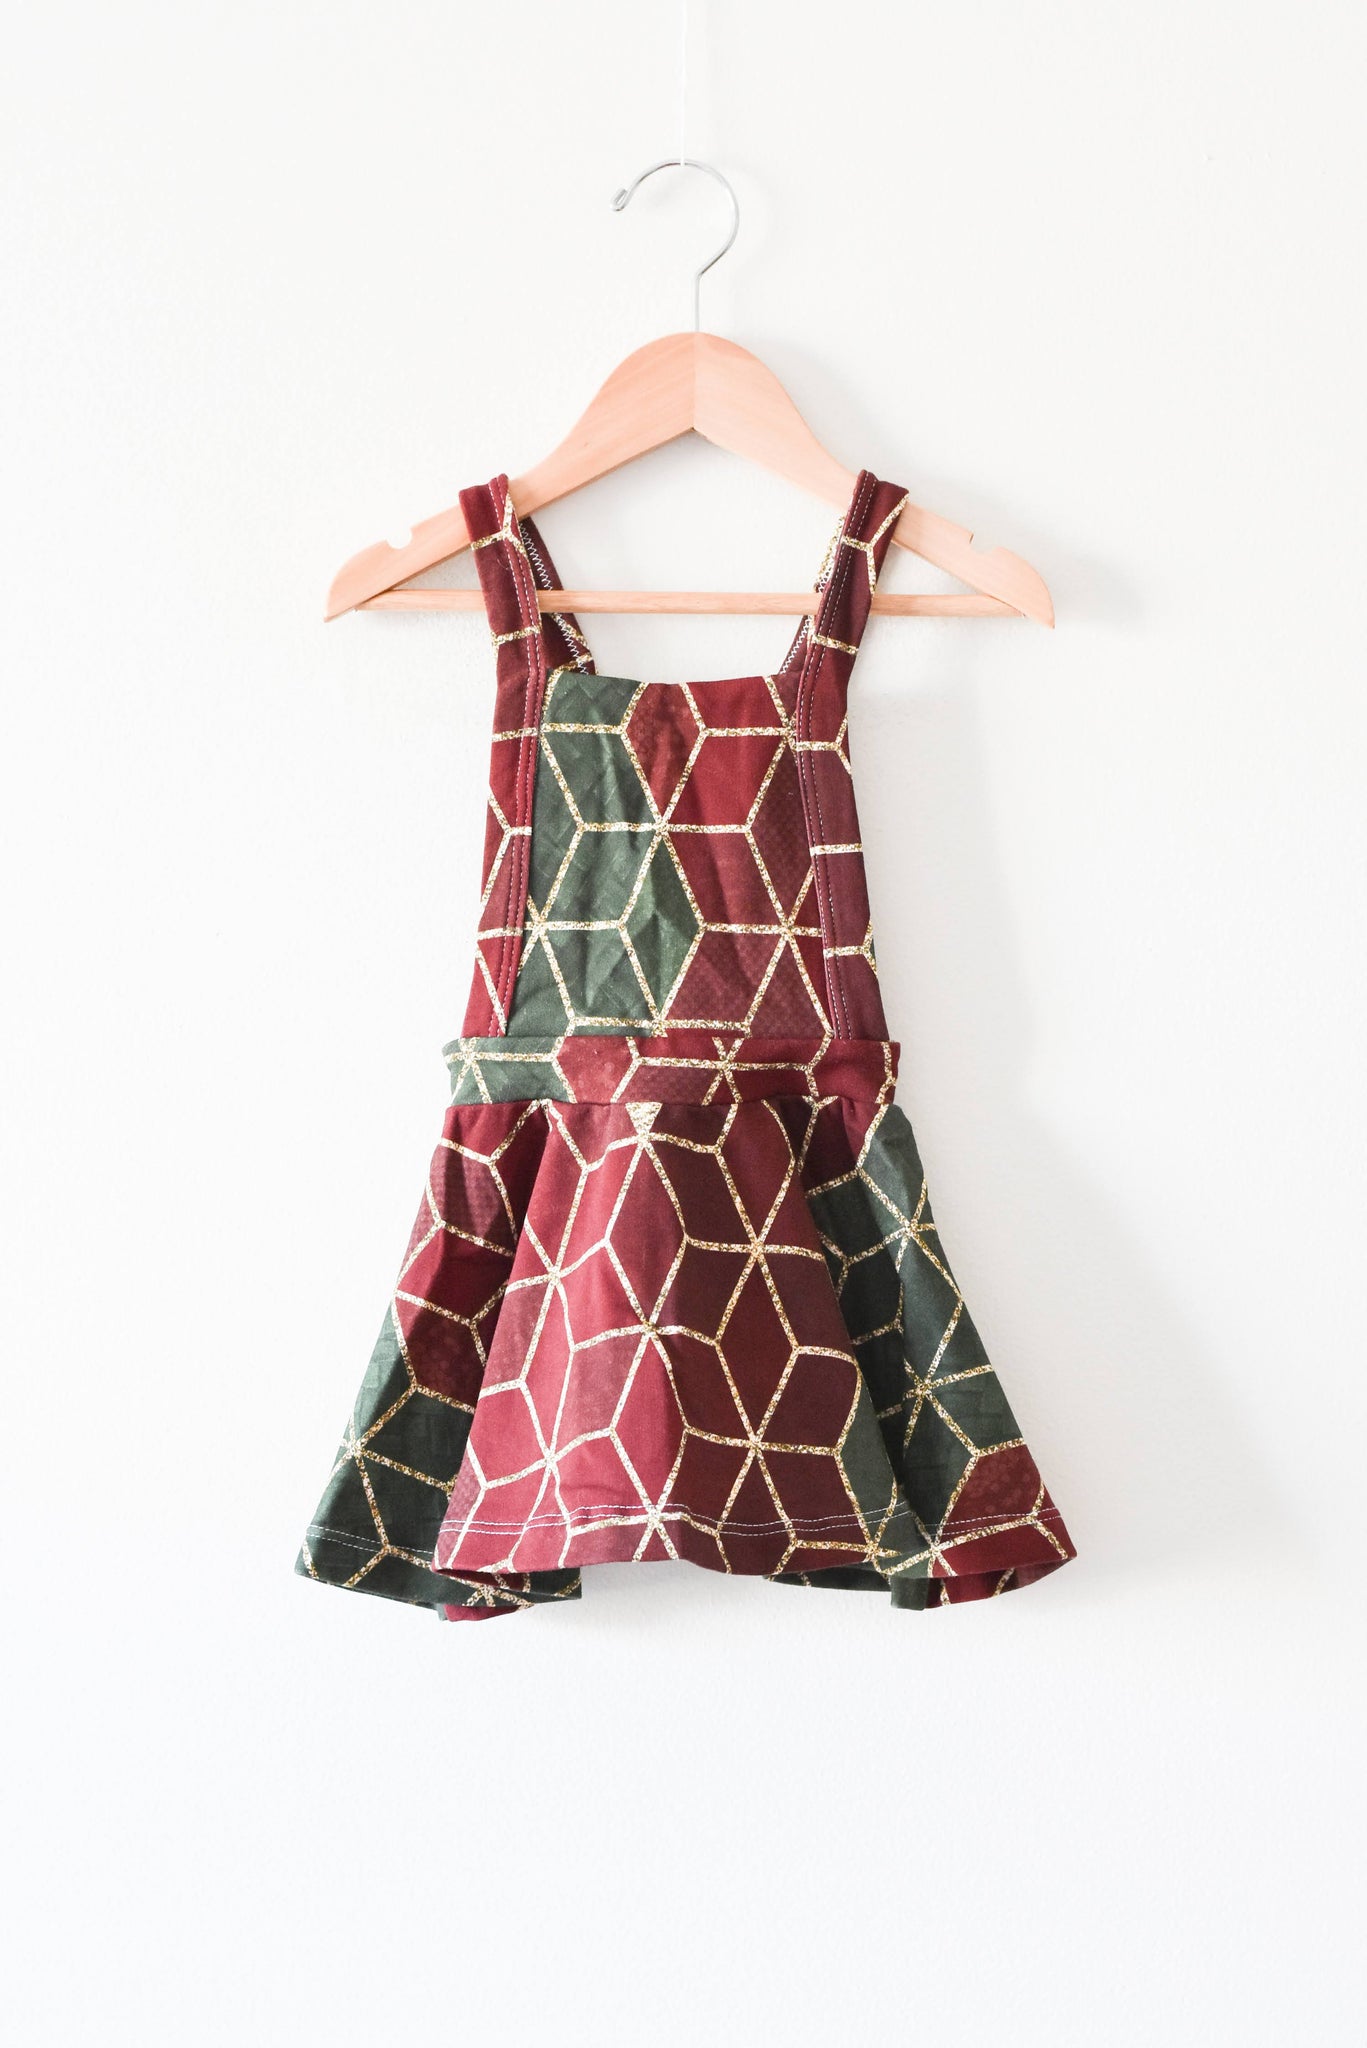 Handmade Pinafore Dress • 12-18 months